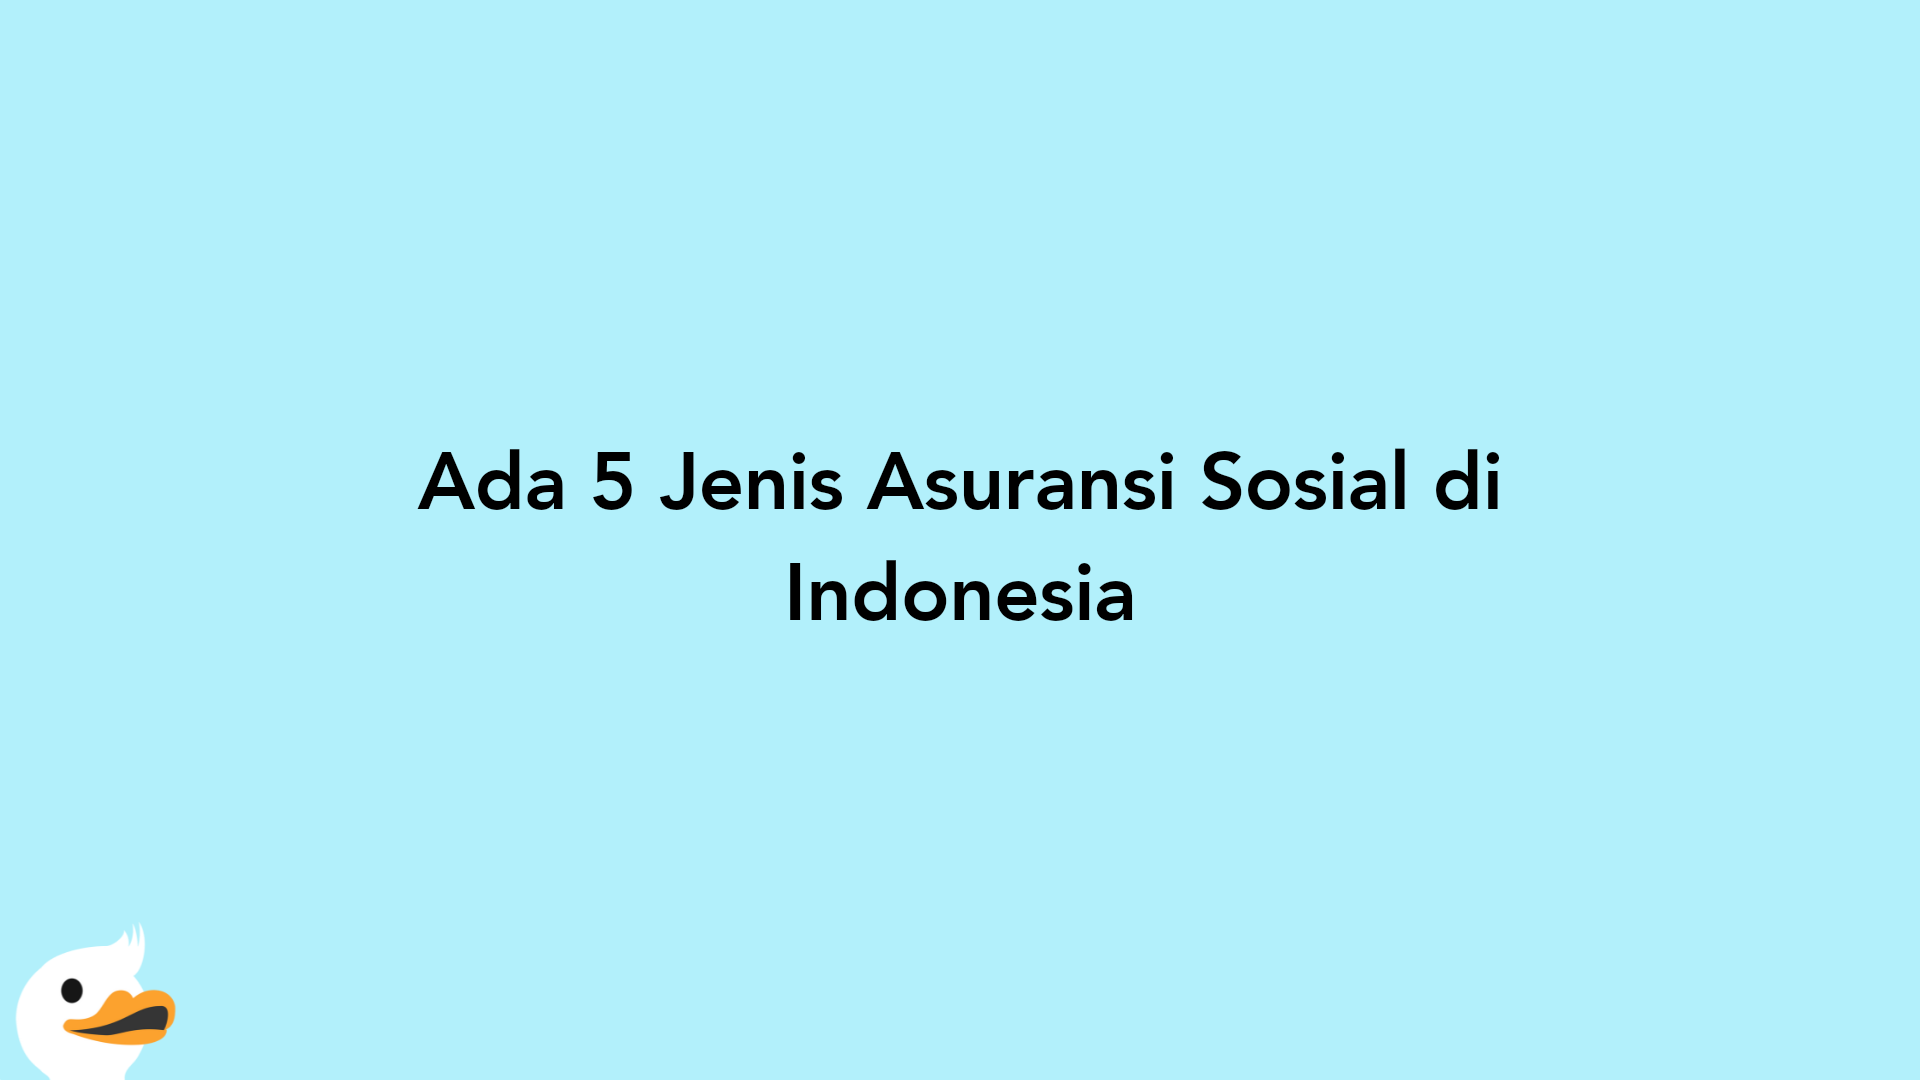 Ada 5 Jenis Asuransi Sosial di Indonesia